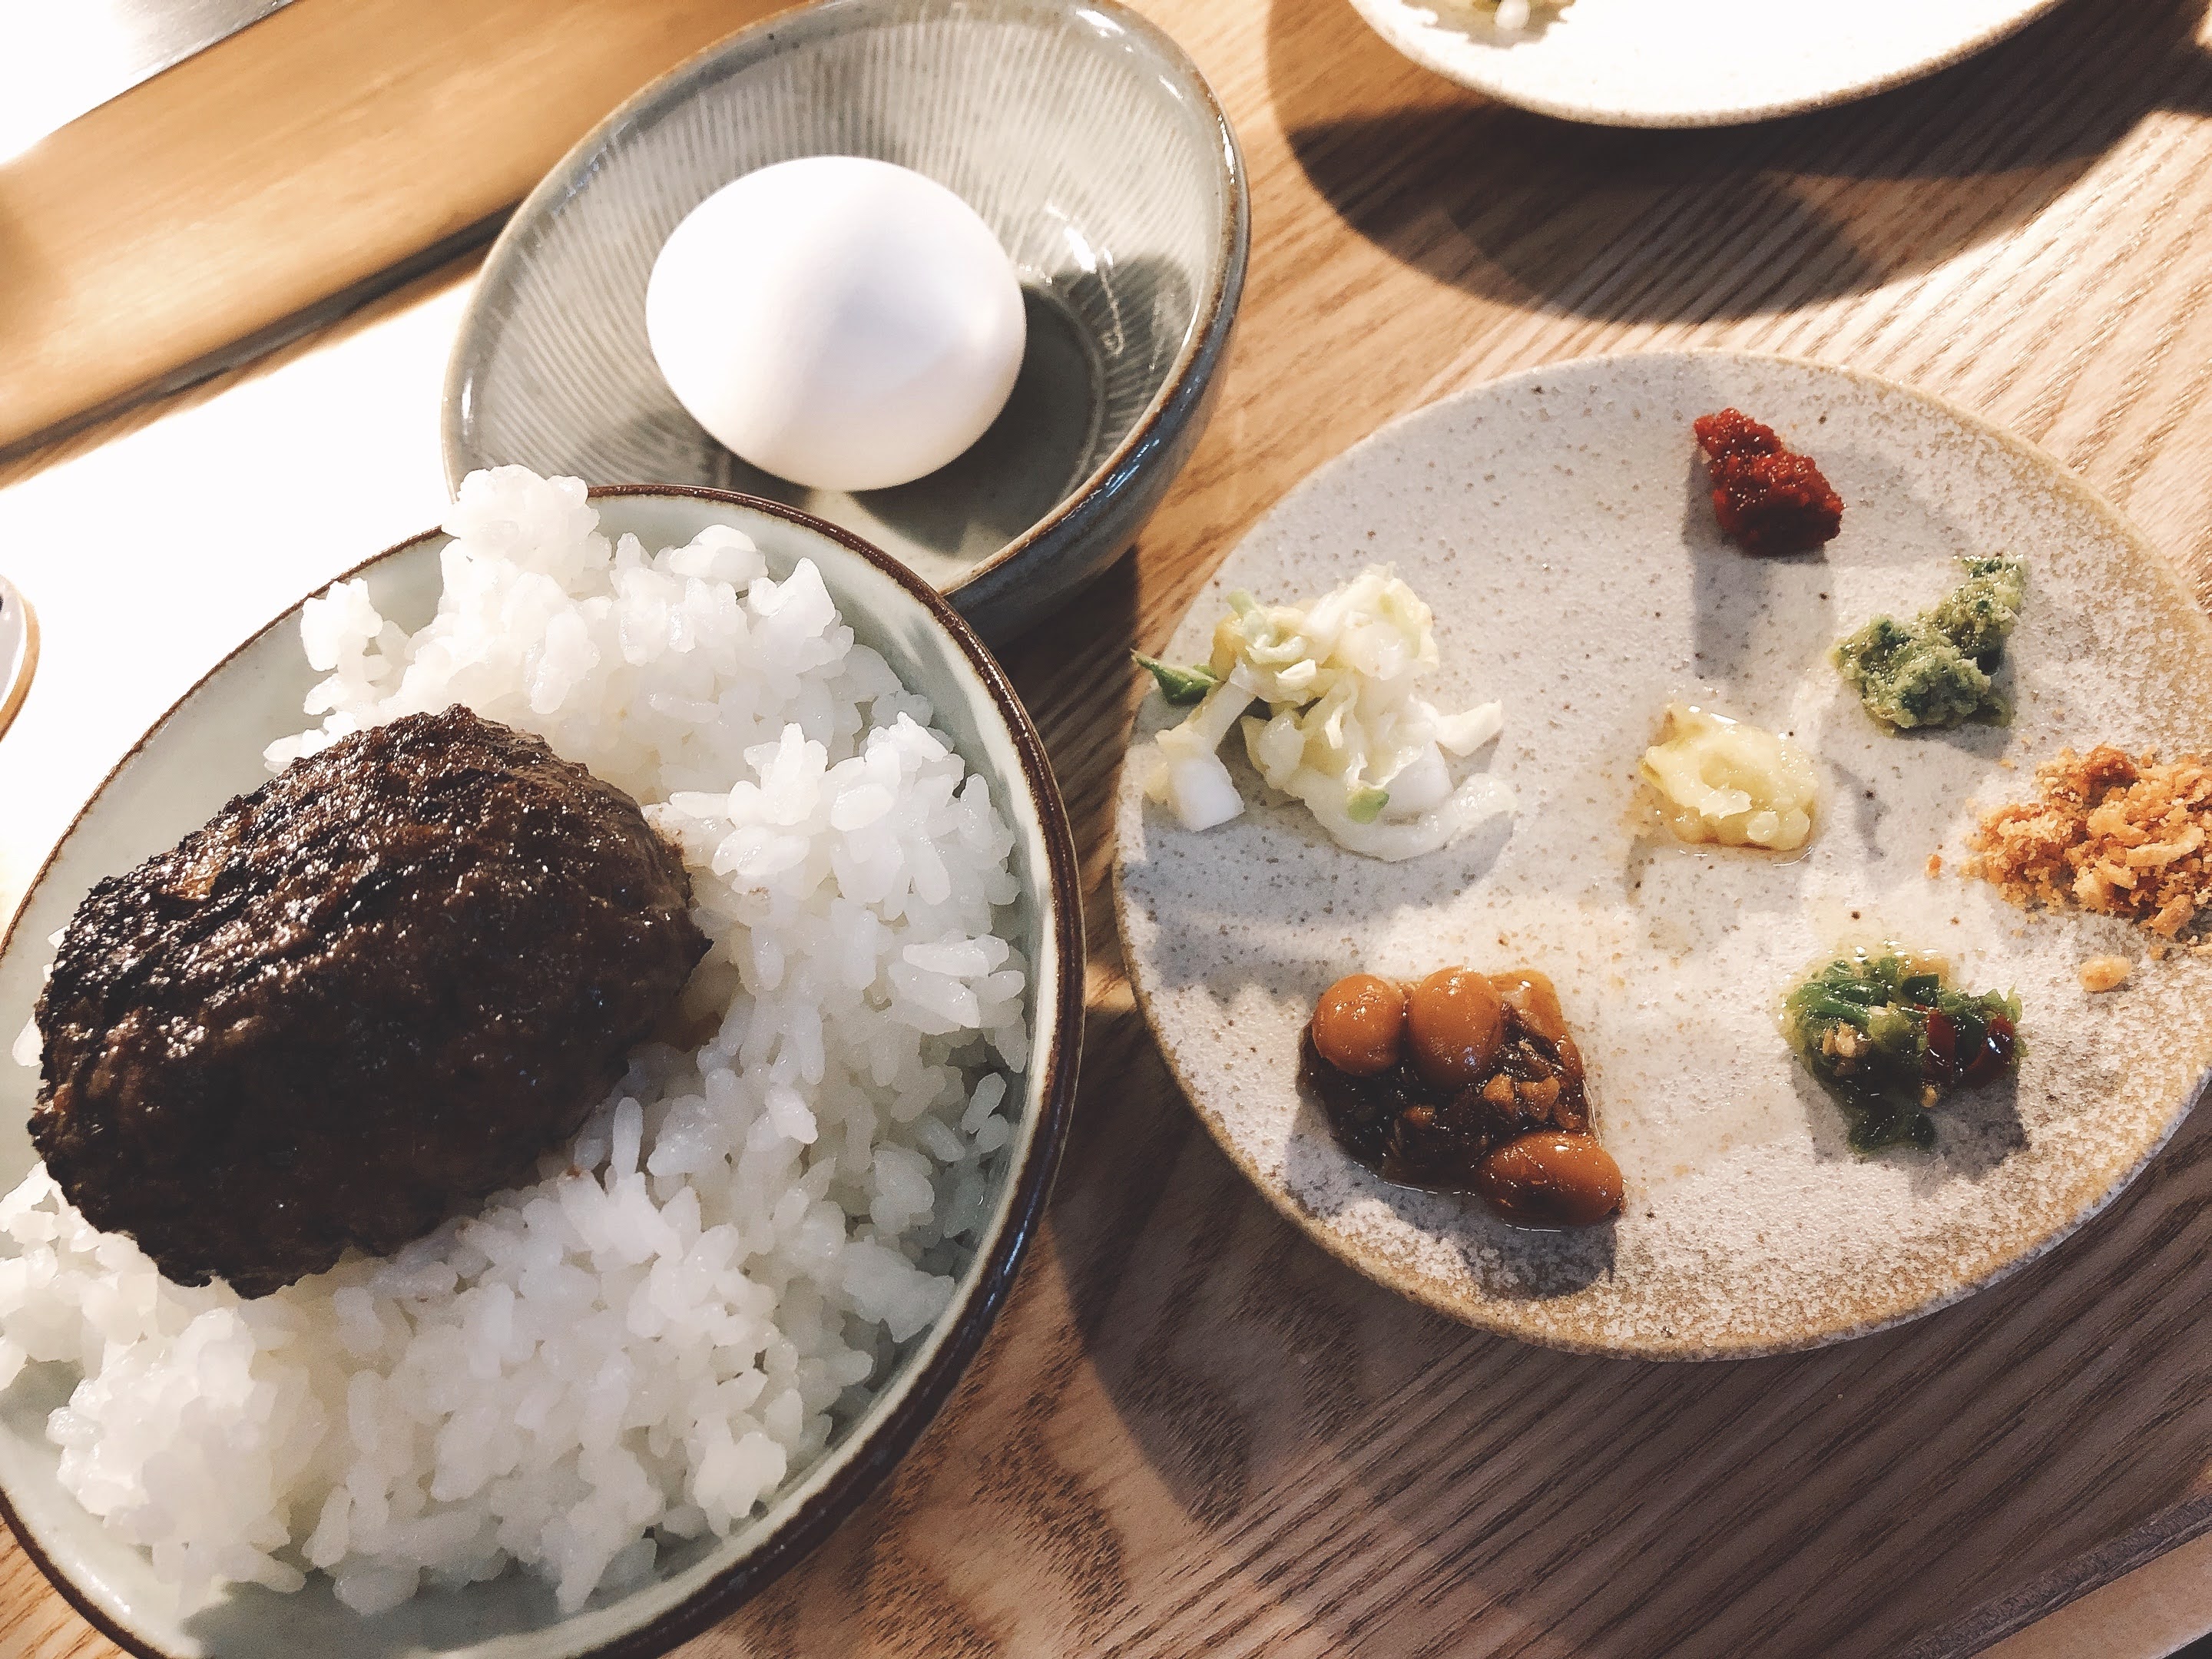 「挽肉と米 定食」1,300円